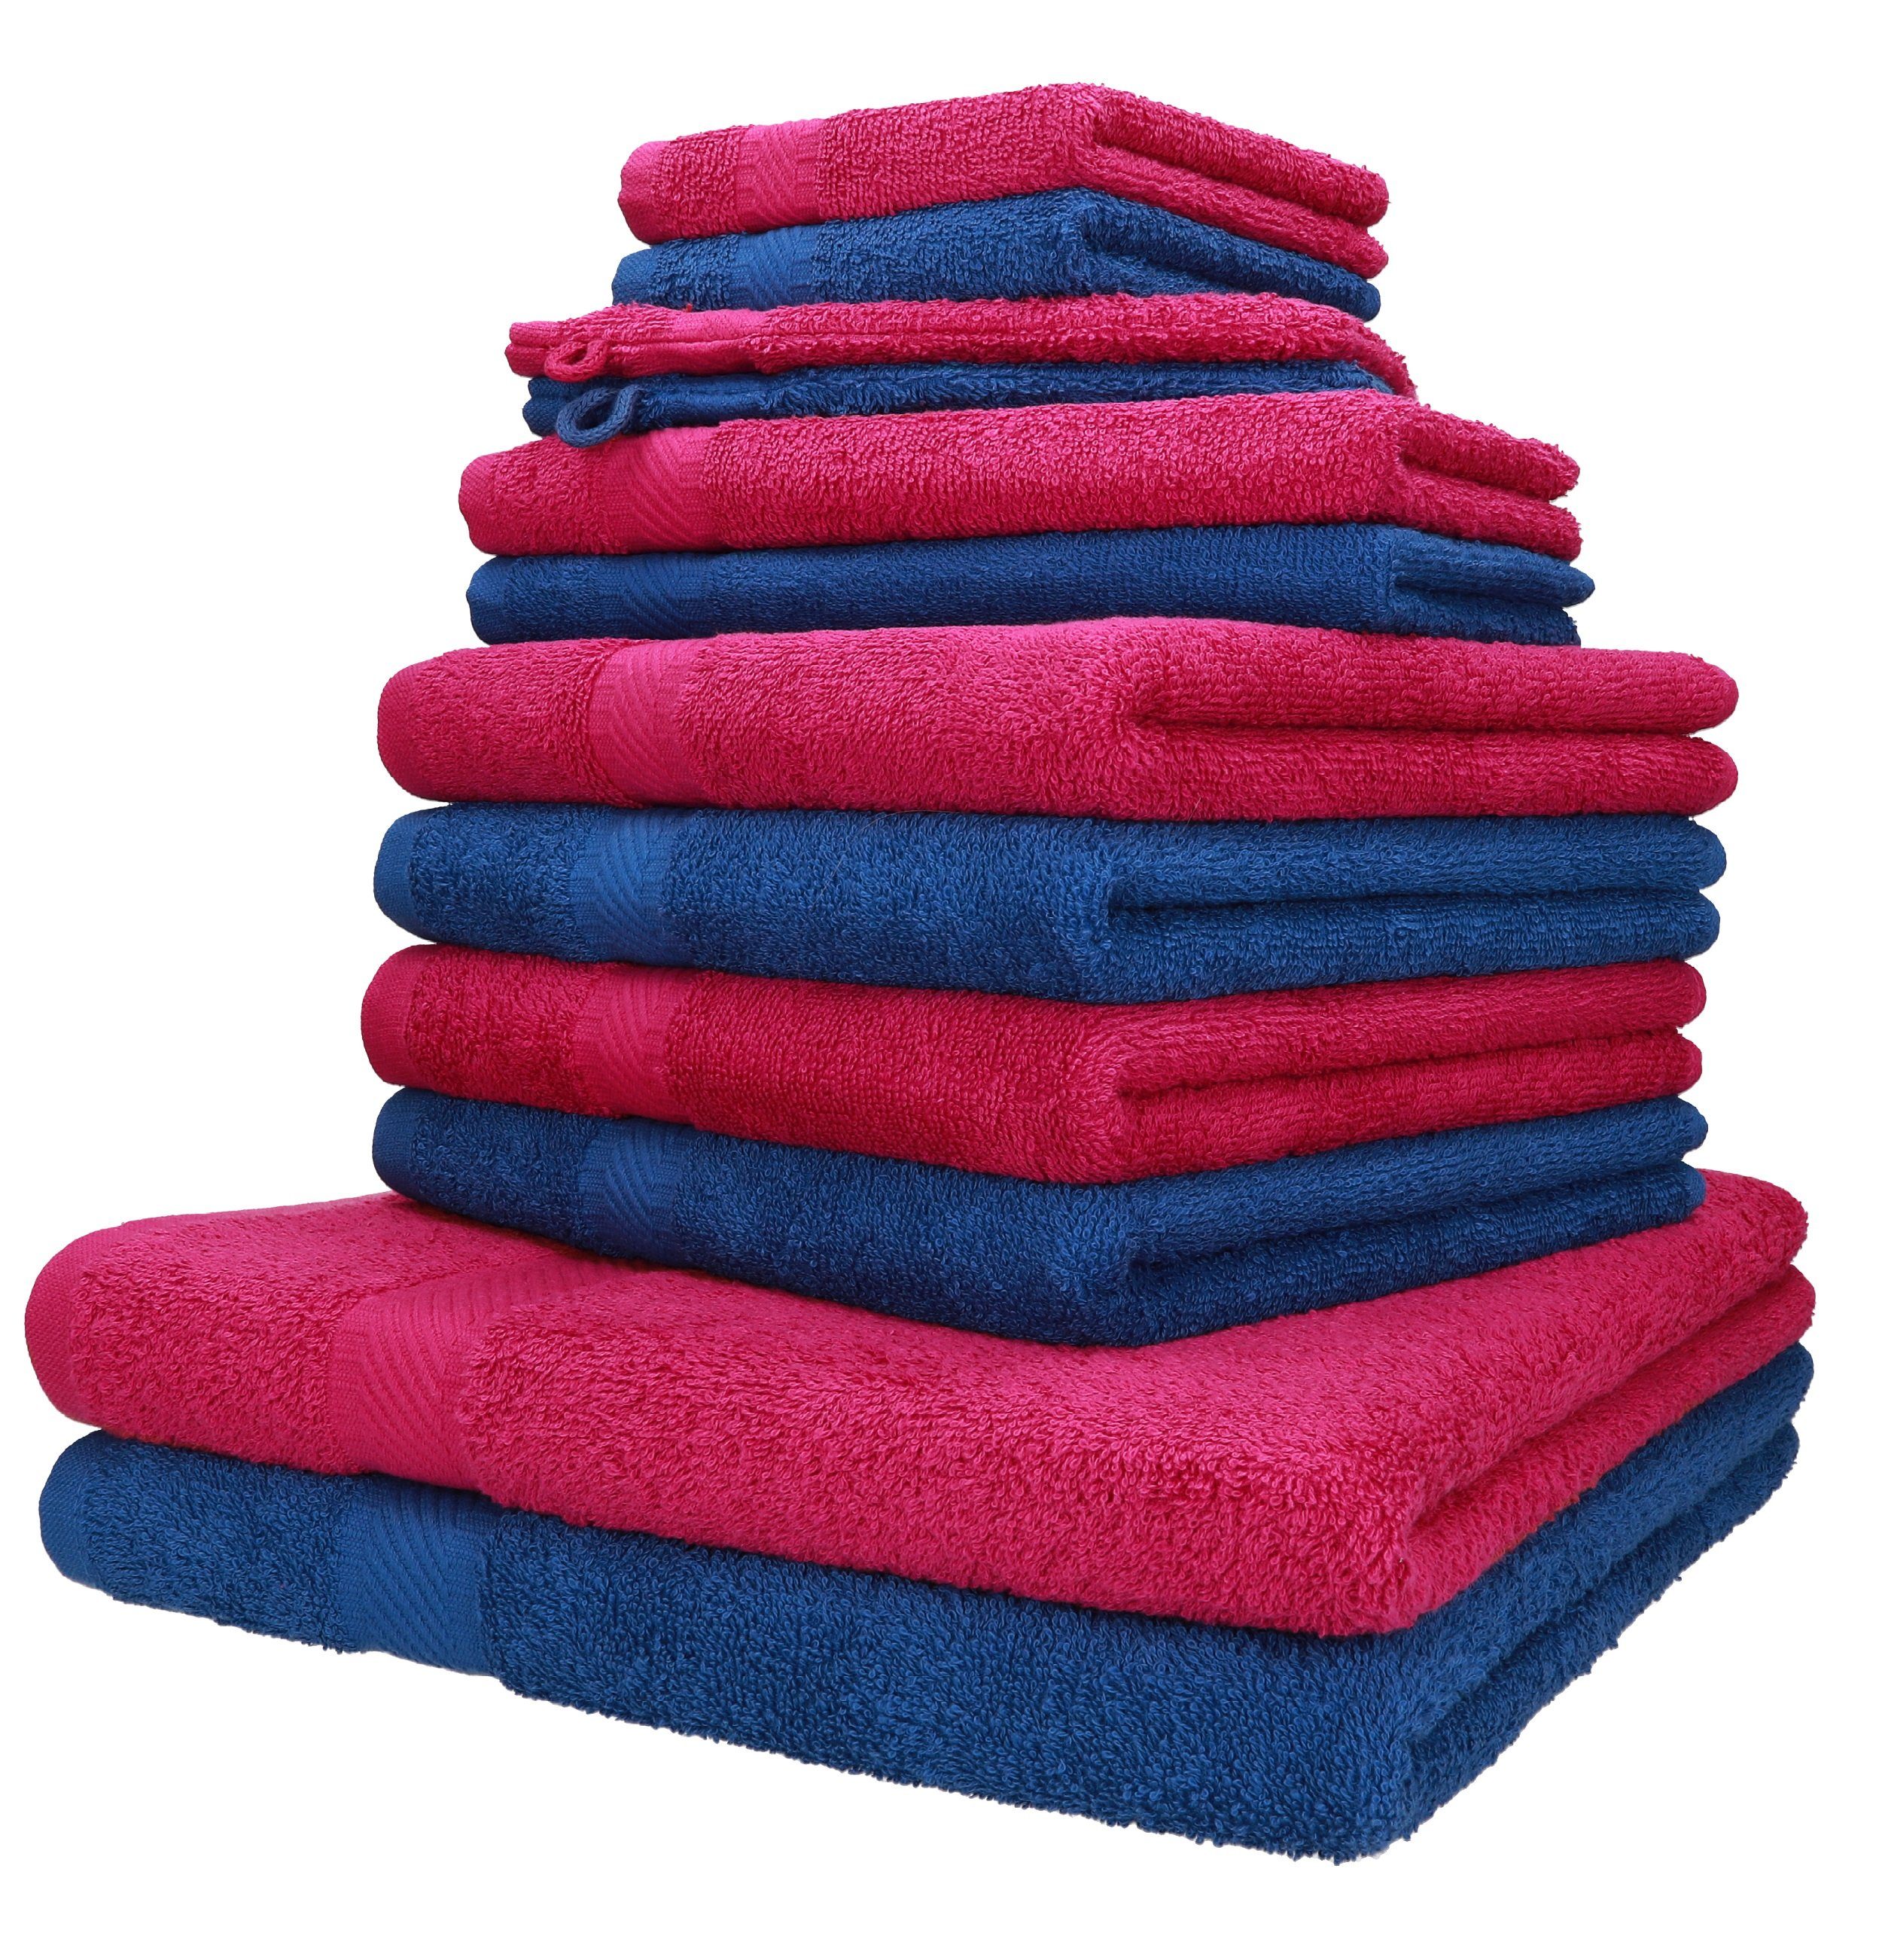 Betz Handtuch Set 12-TLG. Handtuch-Set Palermo 100% Baumwolle 2 Liegetücher 4 Handtücher 2 Gästetücher 2 Seiftücher 2 Waschhandschuhe Farbe Cranberry und blau, 199% Baumwolle, (12-tlg)